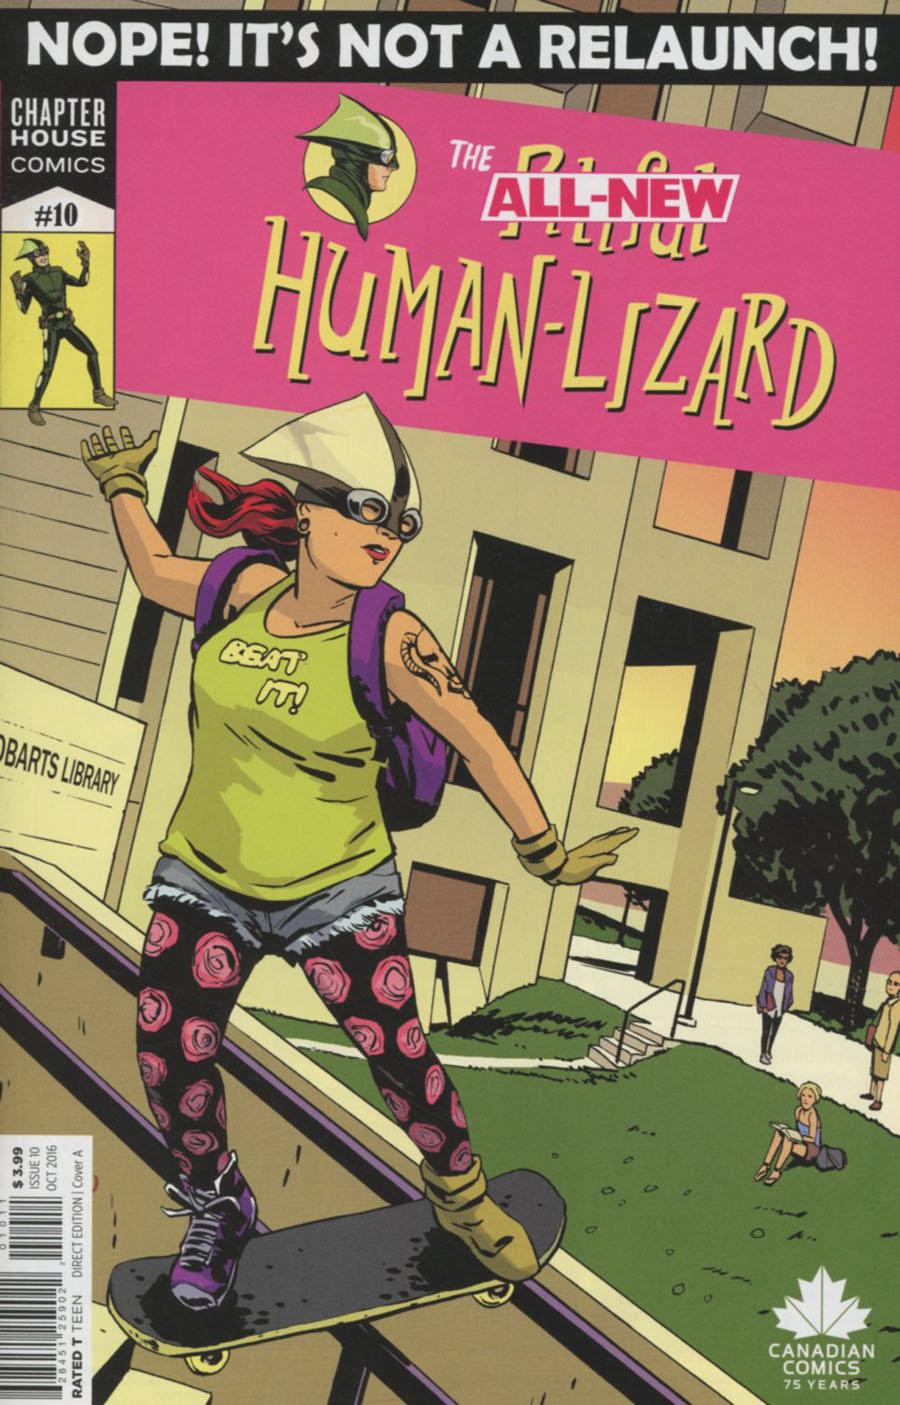 Pitiful Human-Lizard Vol. 1 #10